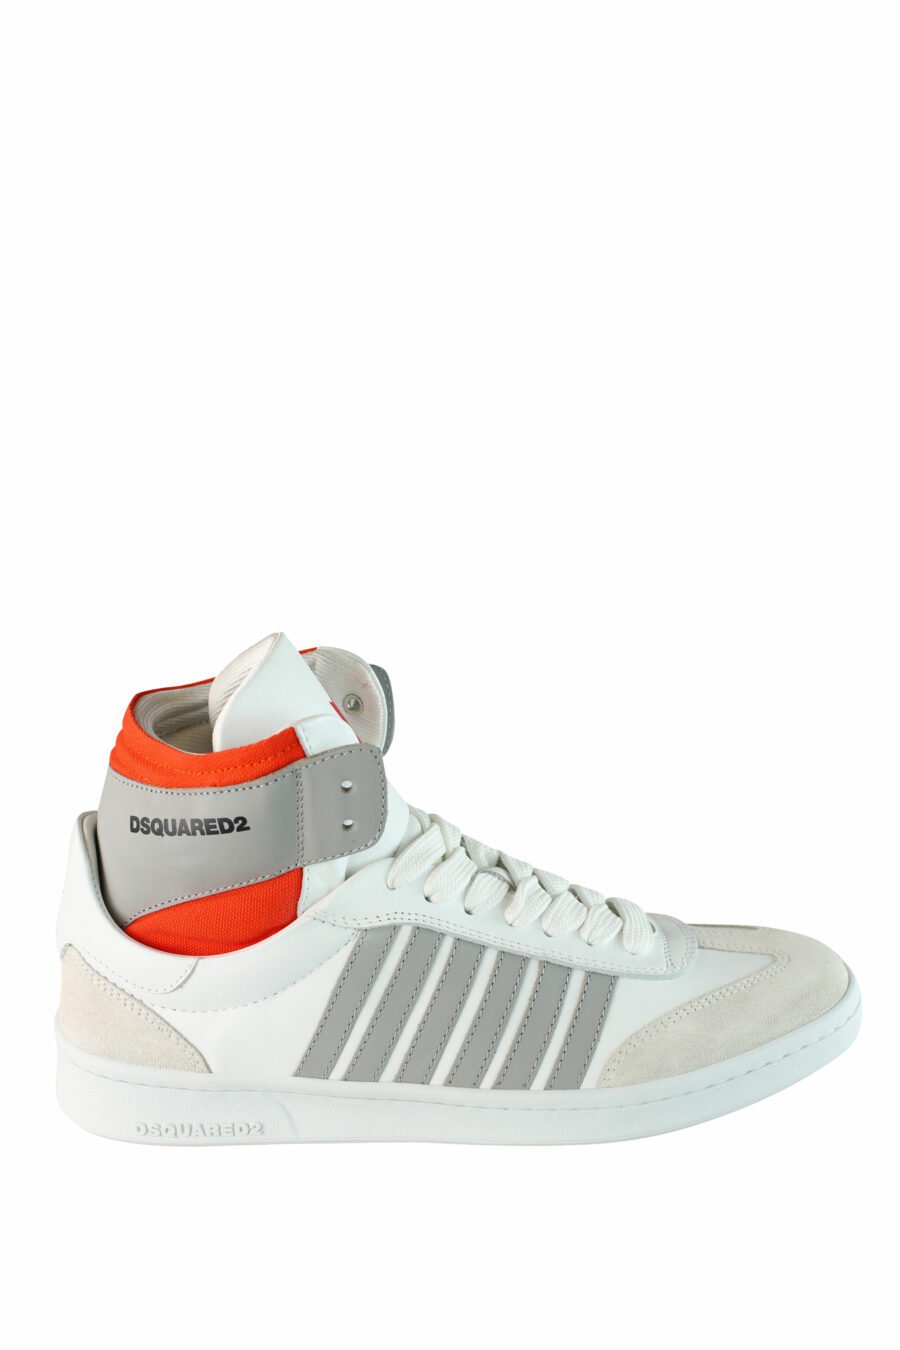 Zapatillas blancas mix "boxer" estilo botín con detalles naranjas y grises - IMG 1501